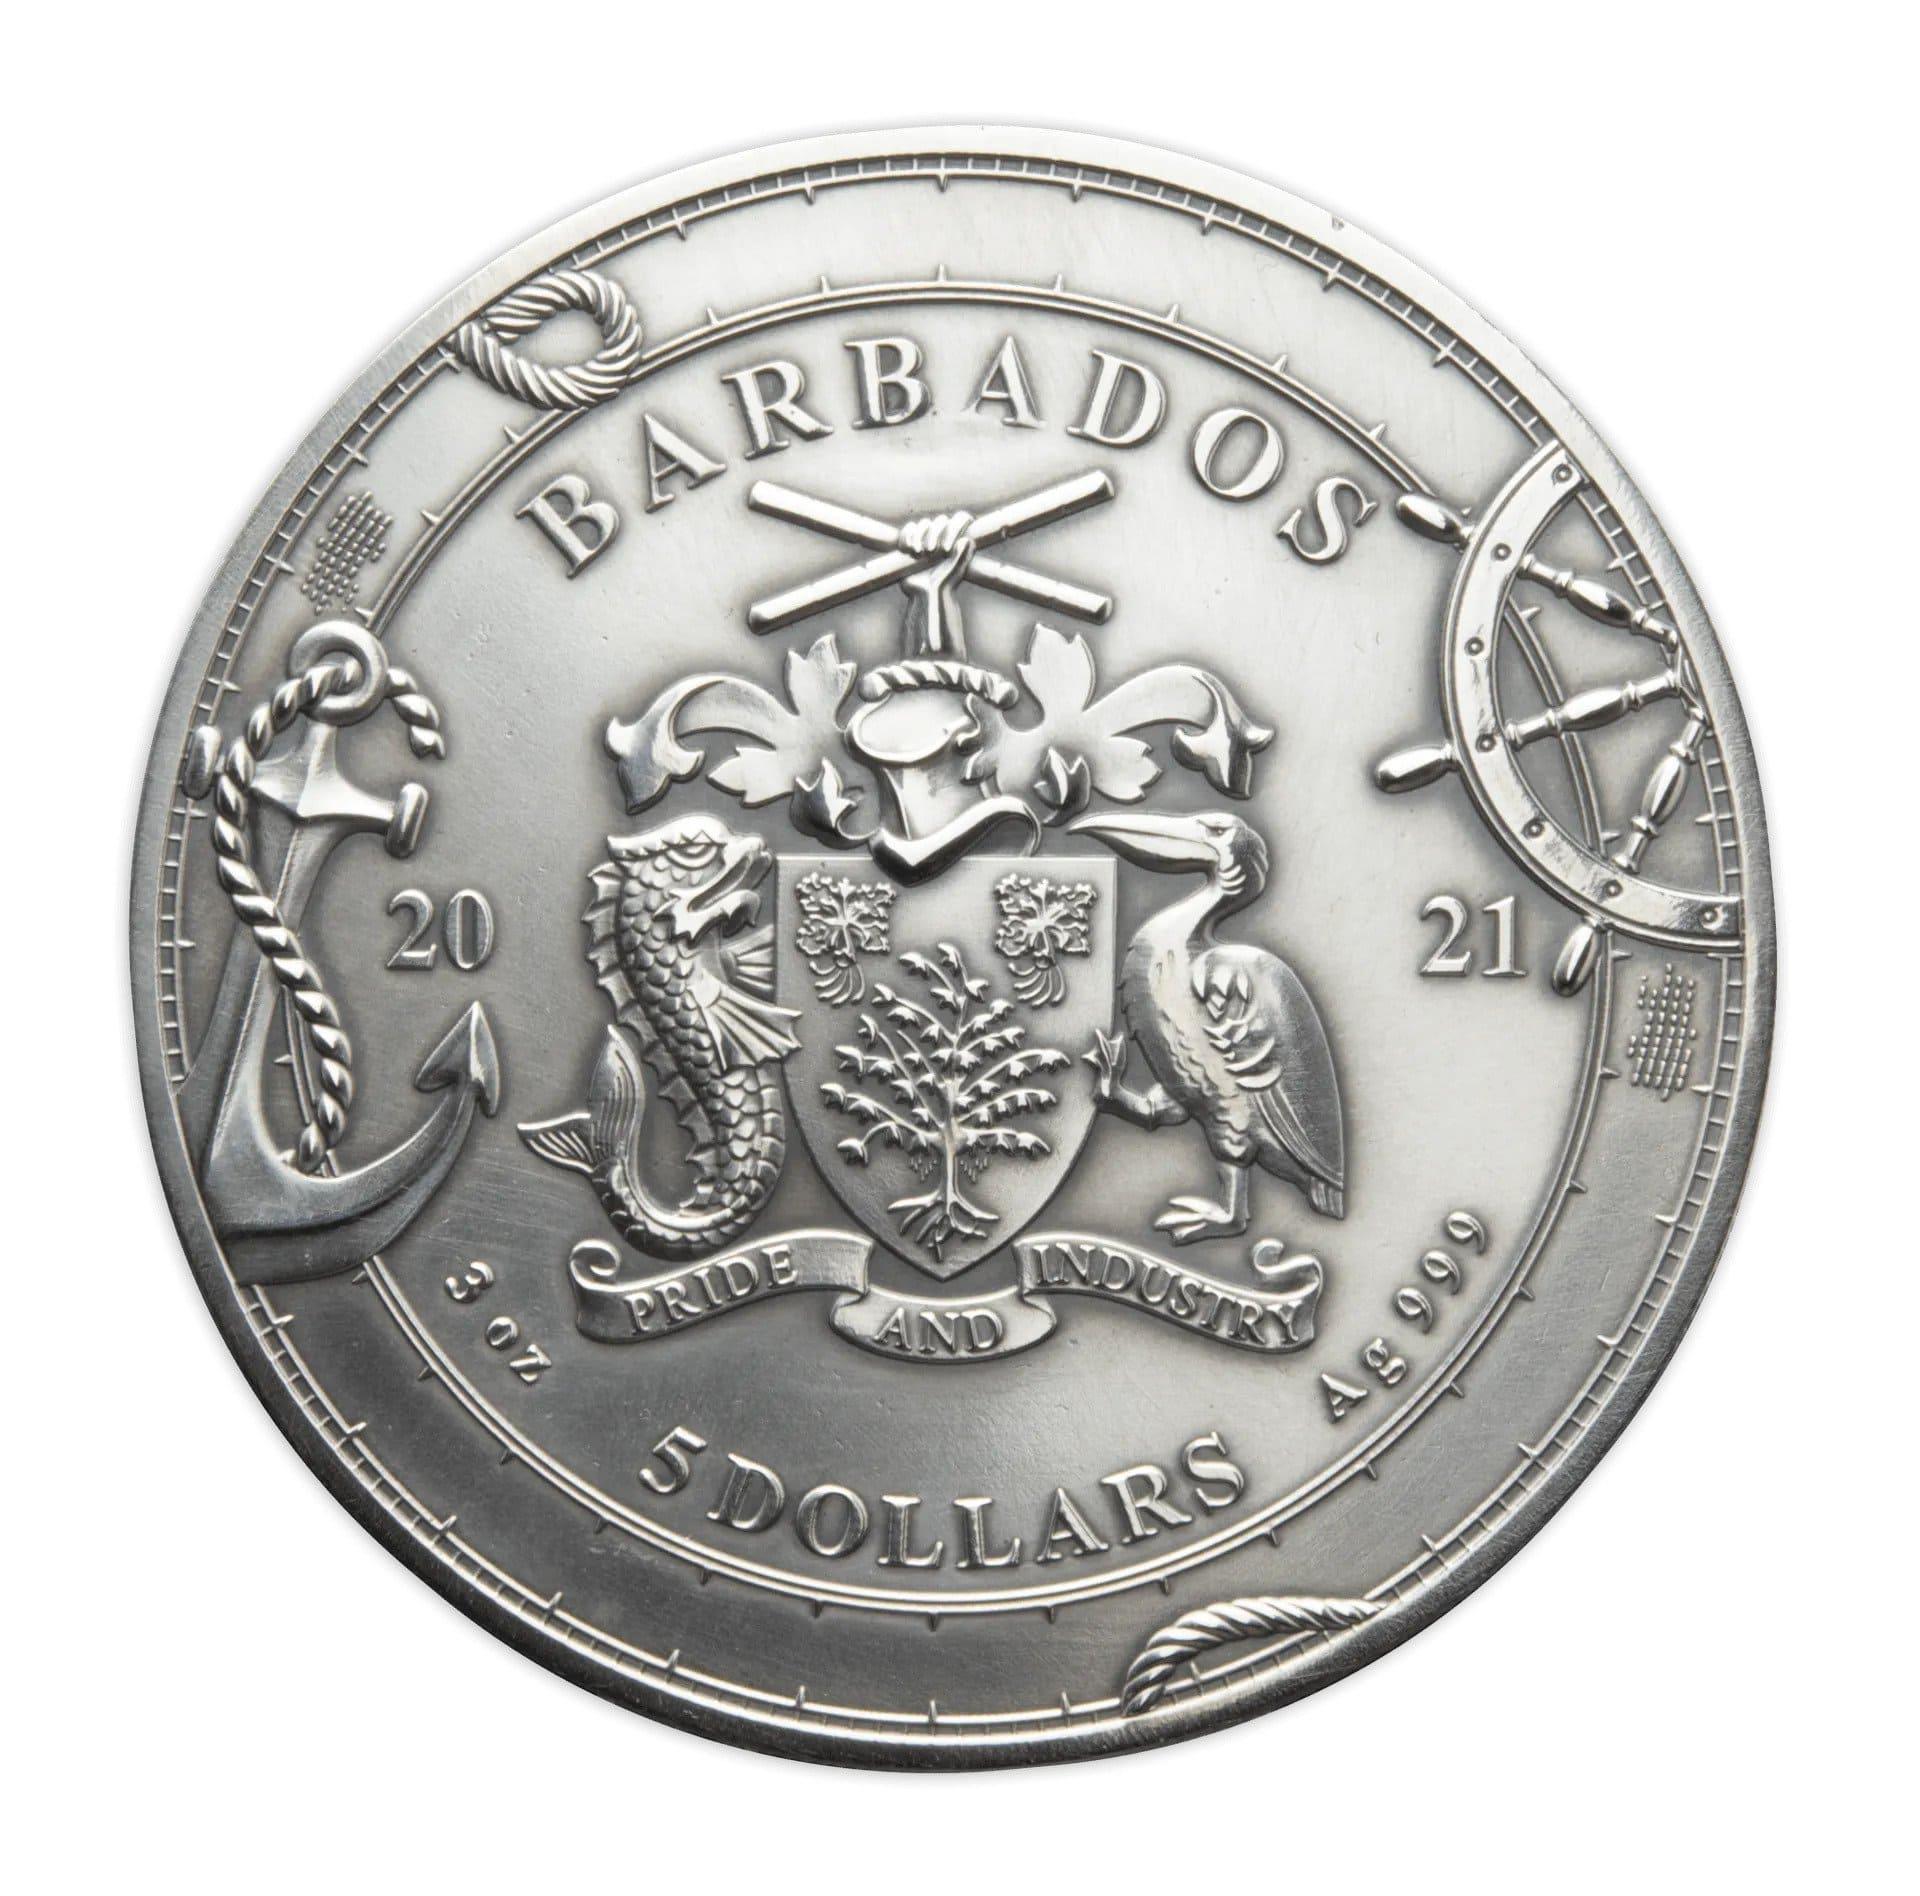 CIRCUMNAVIGATION OF THE WORLD – FERDINAND MAGELLAN 500TH ANNIVERSARY 3 oz Silver Coin $5 Barbados 2021 - PARTHAVA COIN